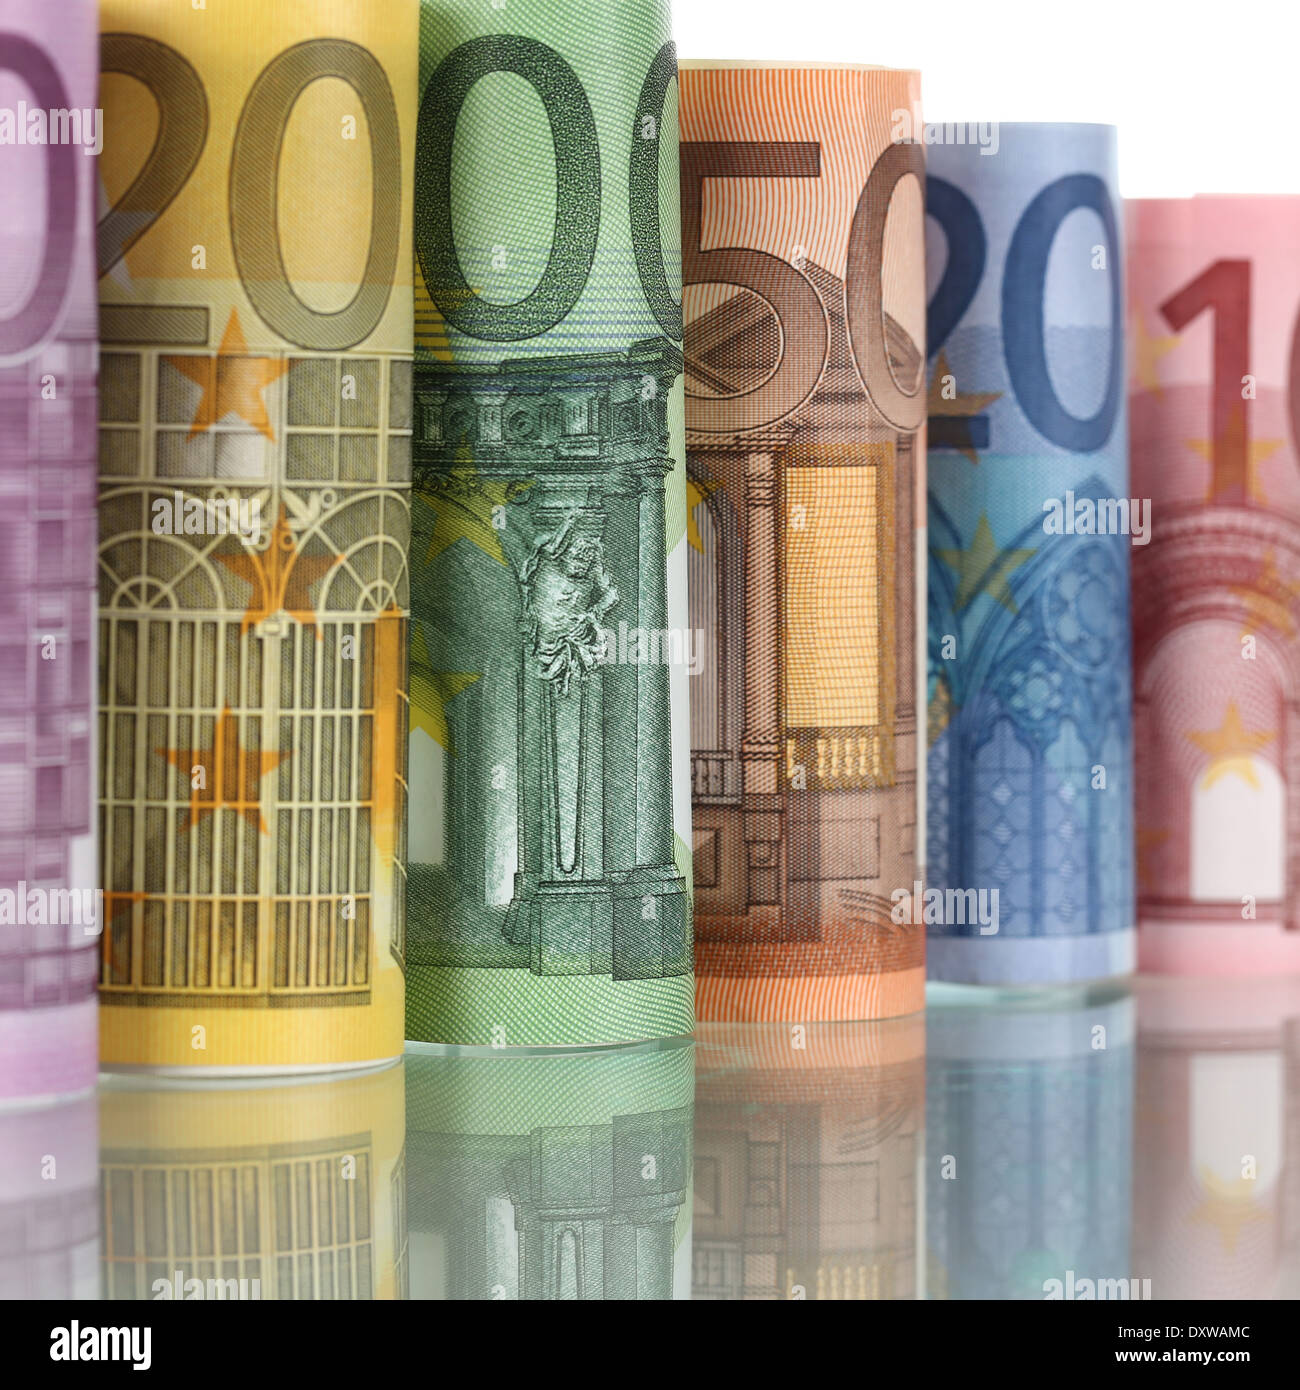 Gerollte Euro-Banknoten von der EU-Währung in Folge Stockfoto